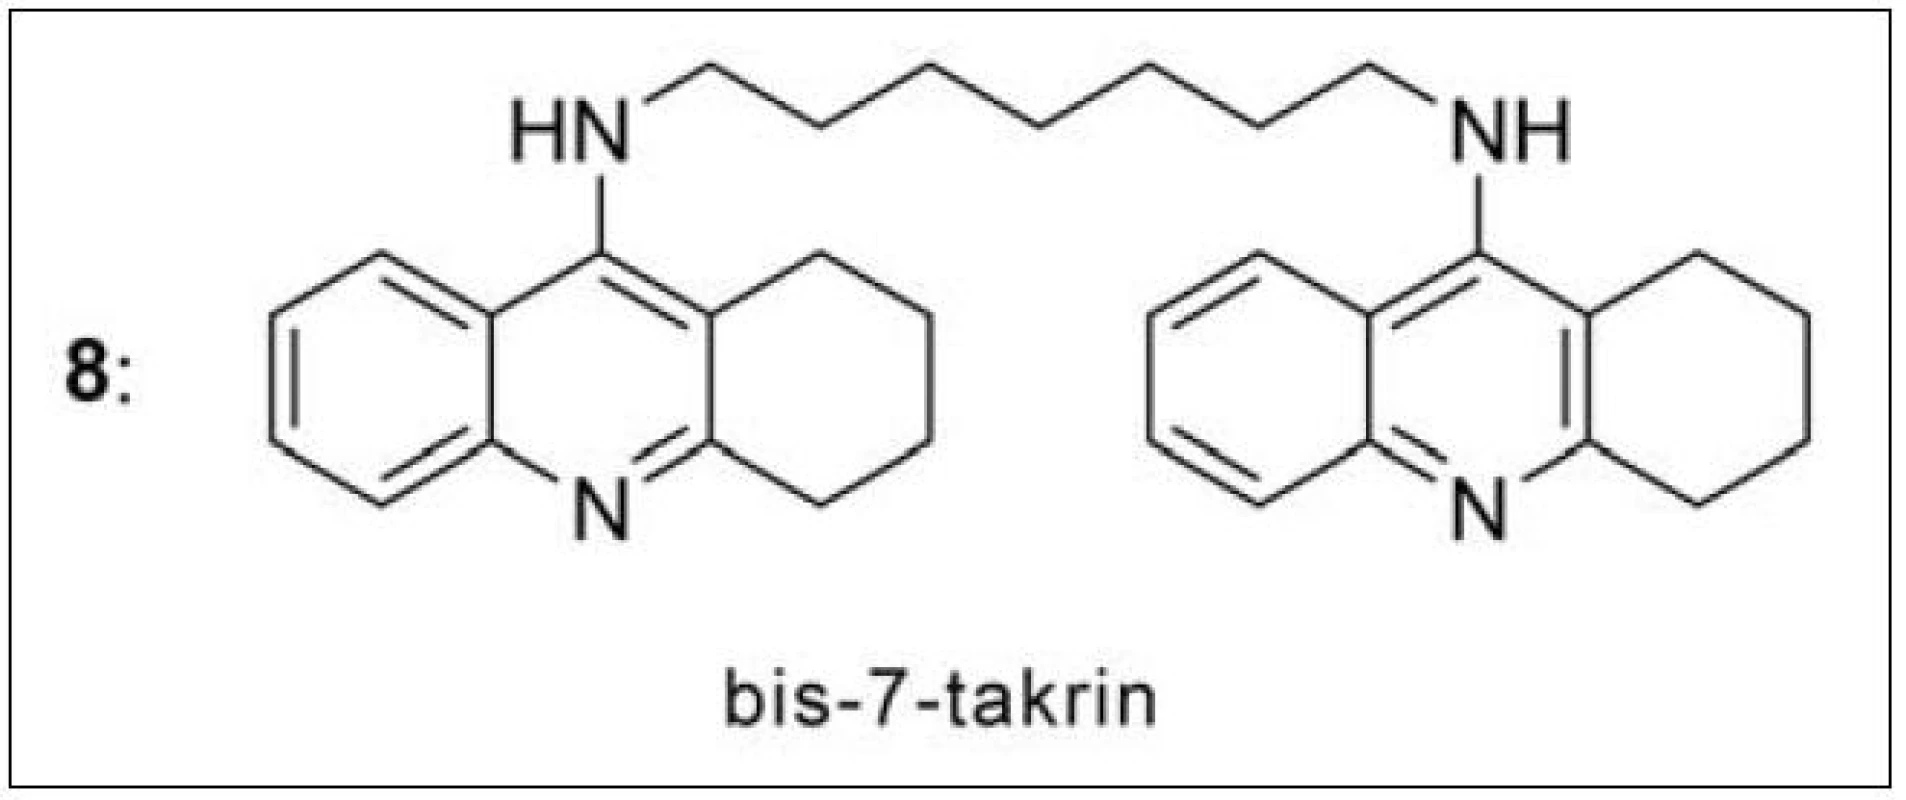 Bis-7-takrin – první duální inhibitor AChE připravený v roce 1996